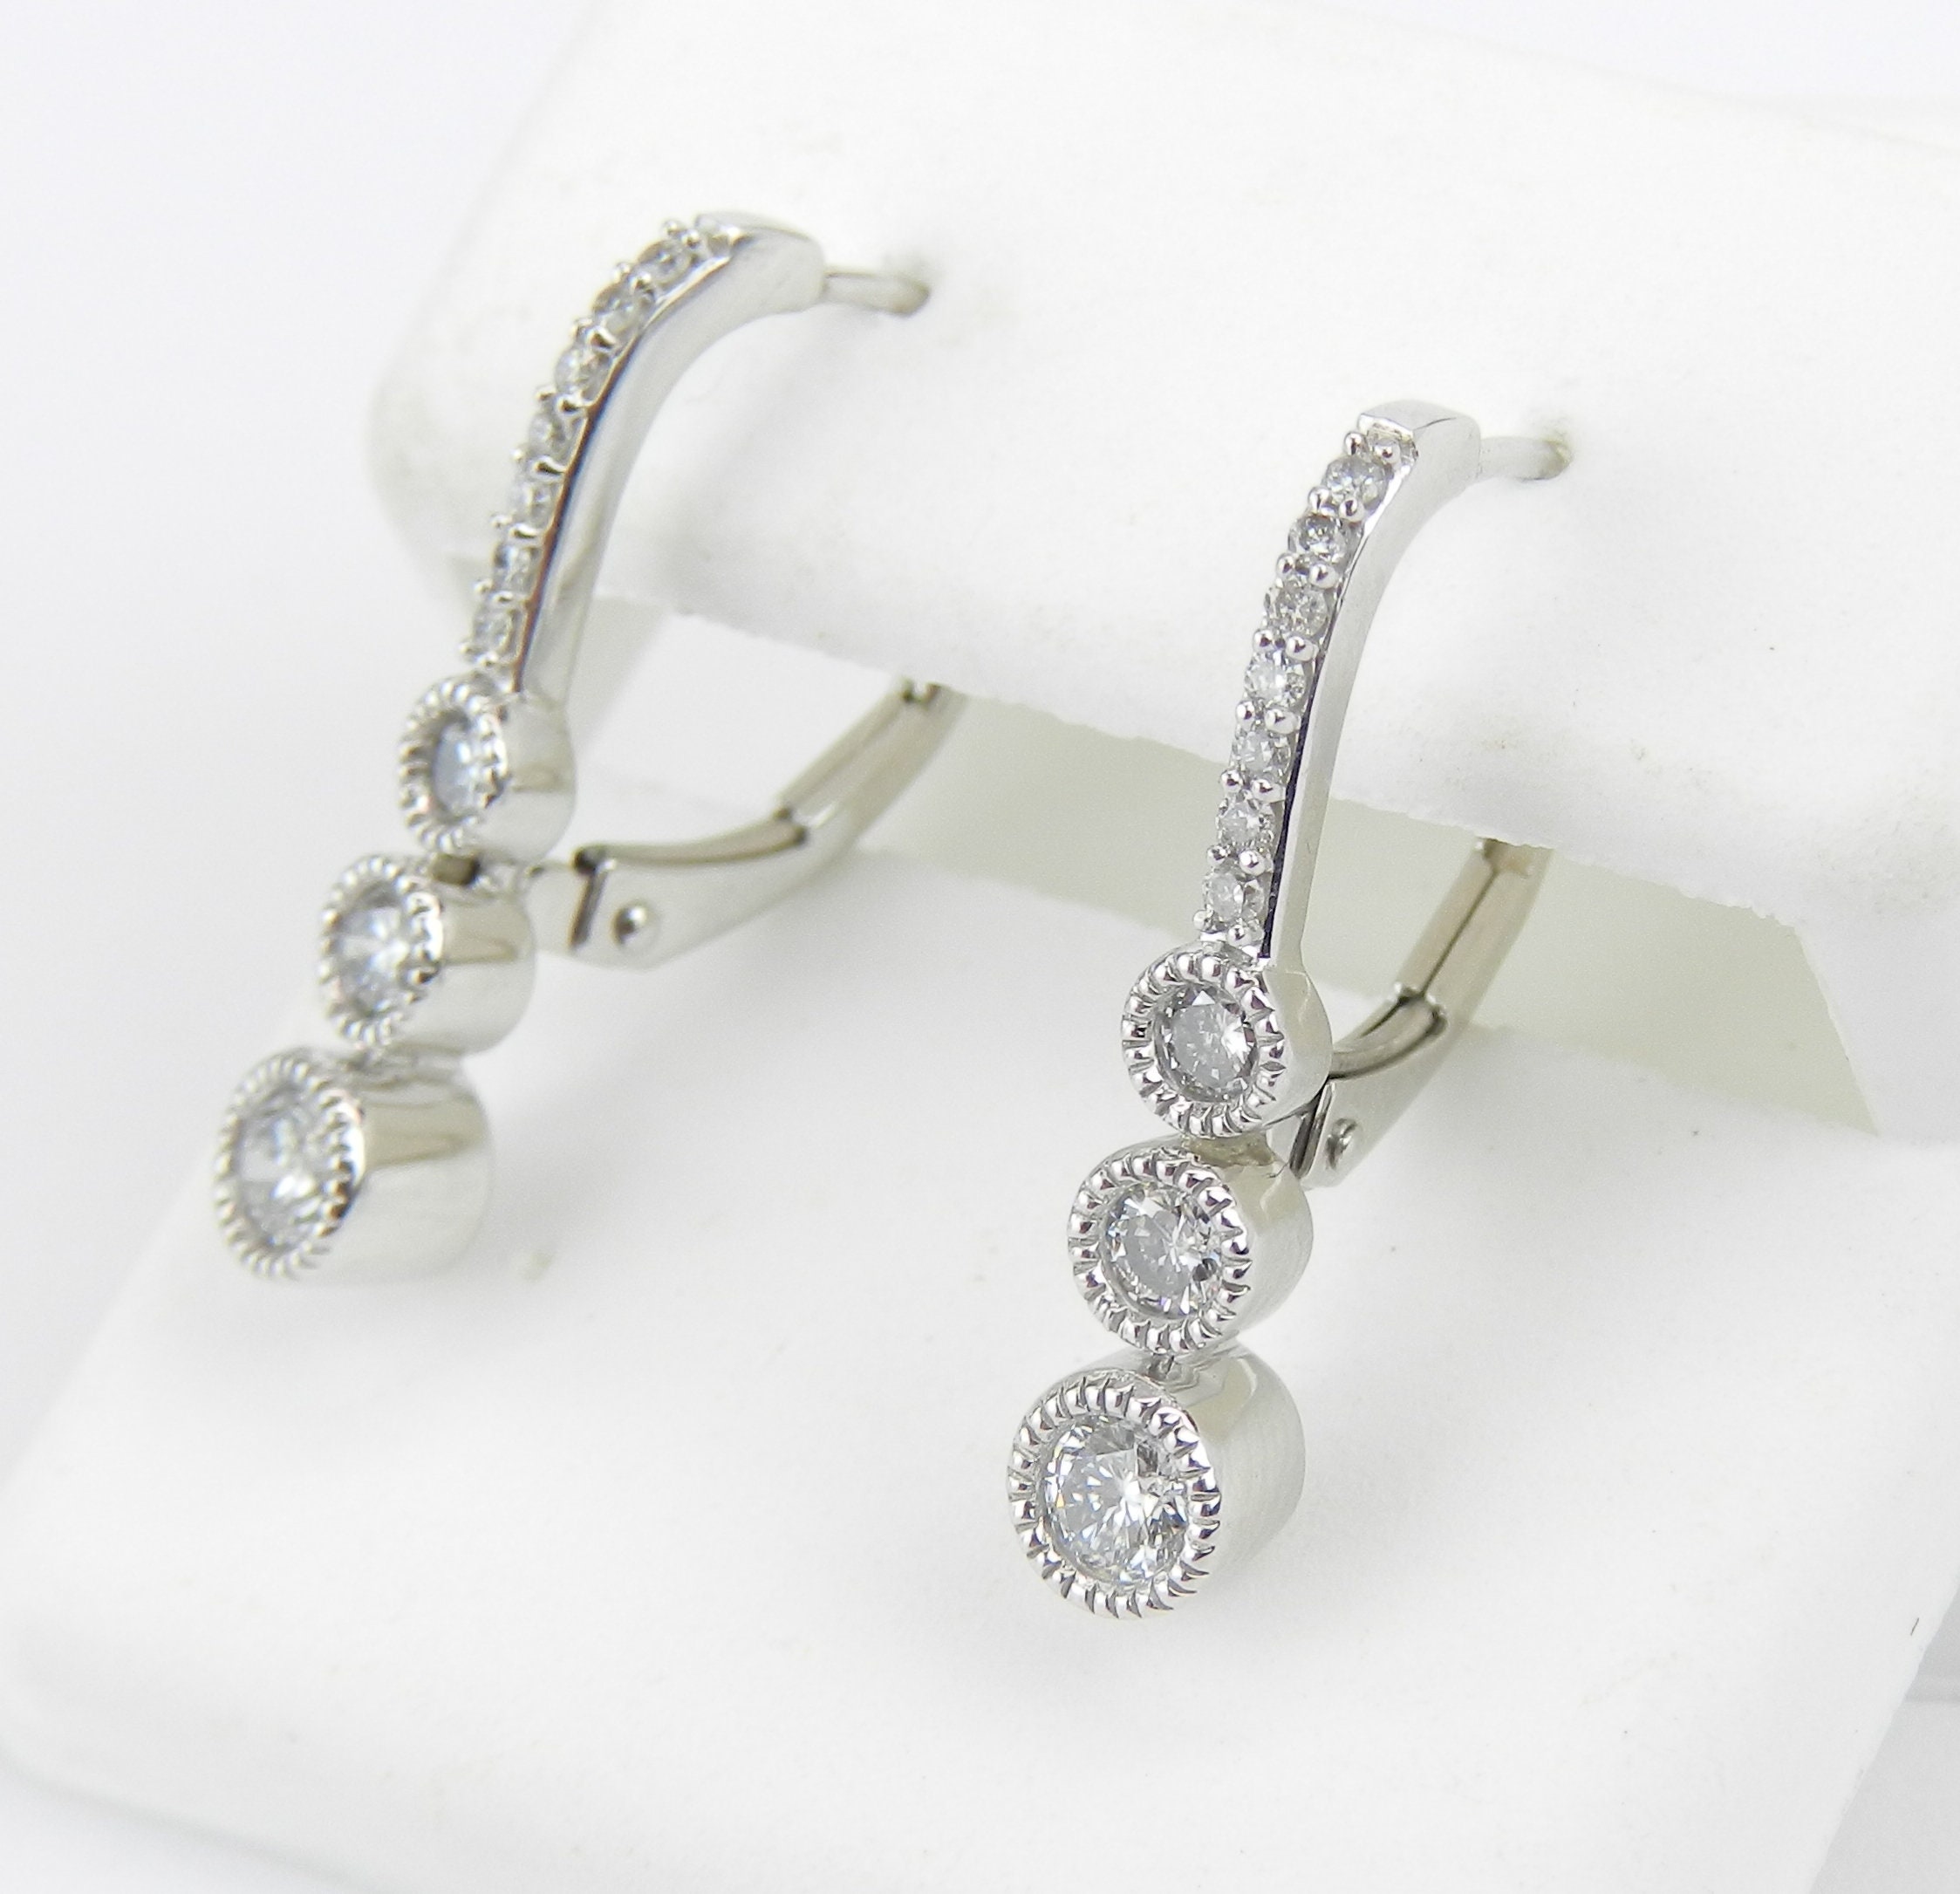 White Gold .75 ct Diamond Drop Earrings Unique Three Stone Design Leverback